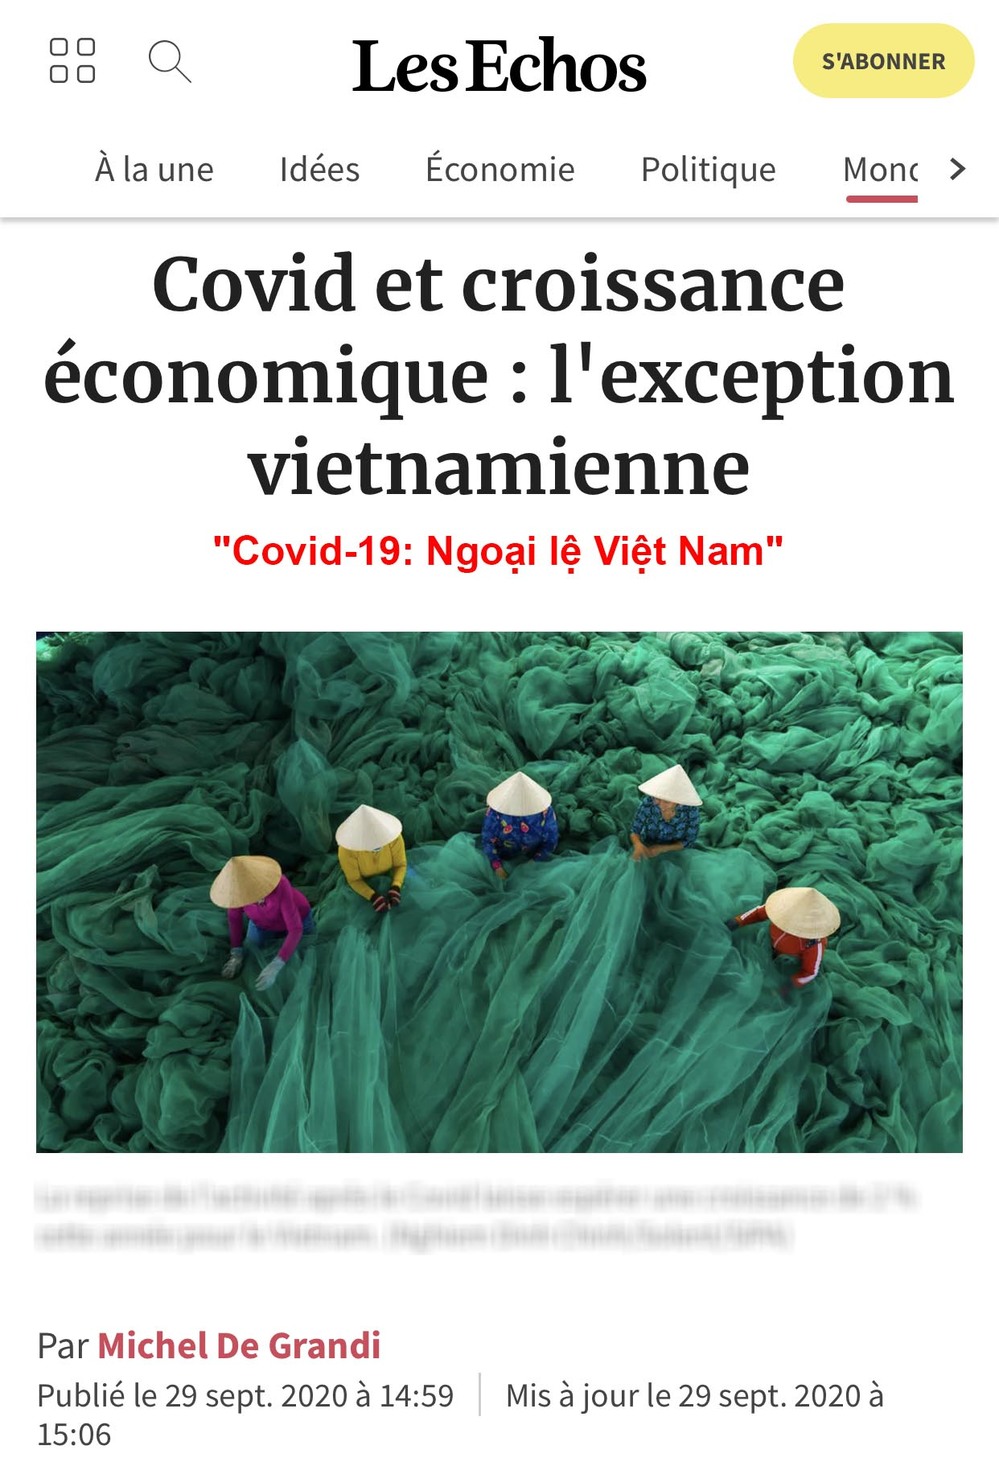  
Báo Pháp dành lời khen ngợi cho công tác chống dịch tại Việt Nam. (Ảnh: Chụp màn hình)